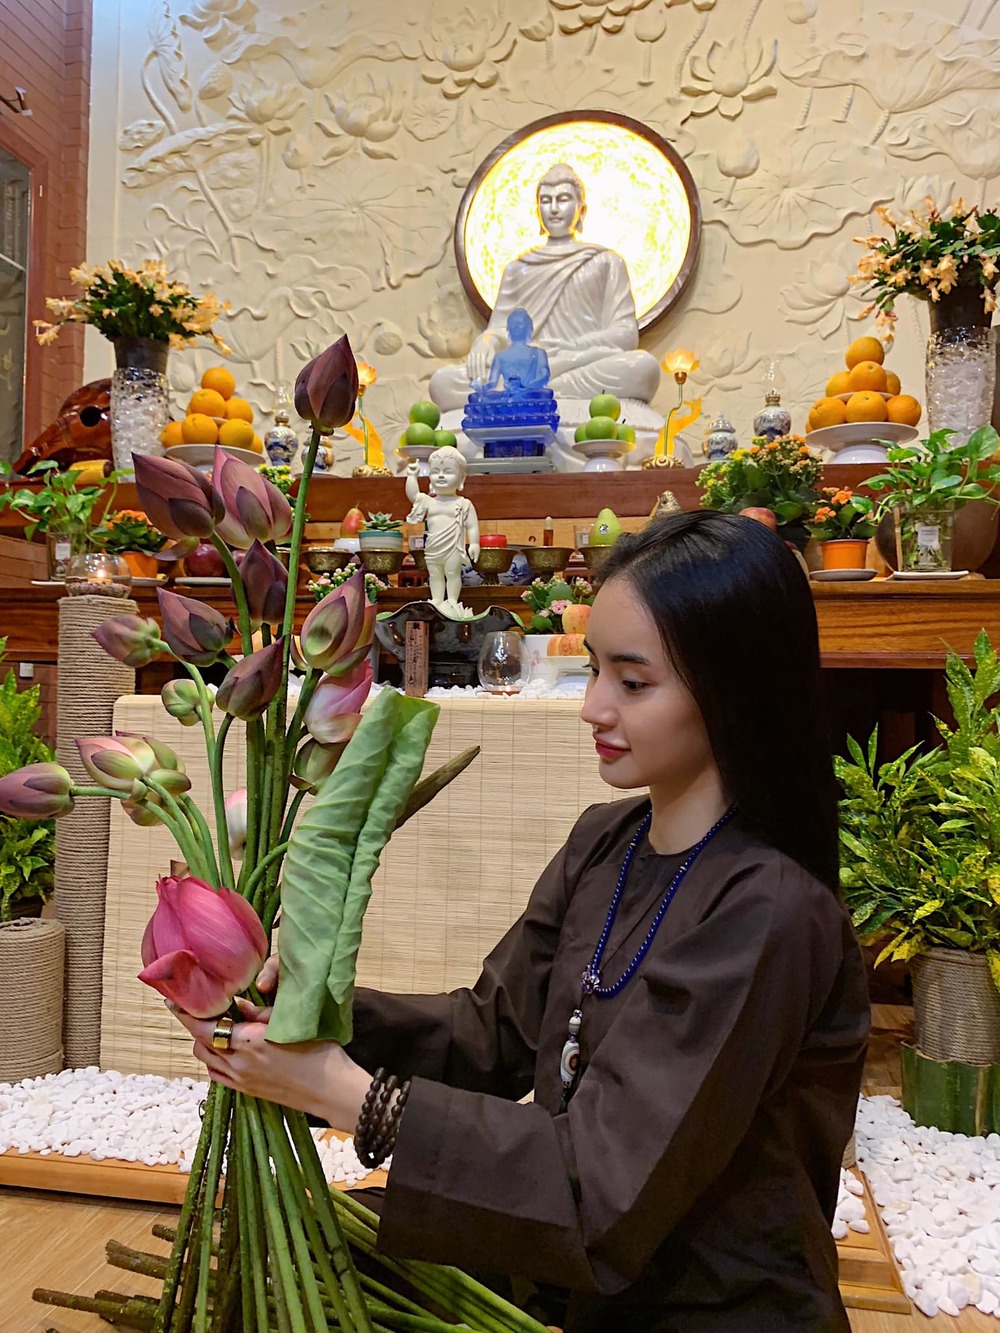  
Hình ảnh trên trang cá nhân bây giờ của Phương Trang chỉ xoay quanh việc tụng kinh, cắm hoa, đọc sách, đi chùa... (Ảnh: FBNV) - Tin sao Viet - Tin tuc sao Viet - Scandal sao Viet - Tin tuc cua Sao - Tin cua Sao